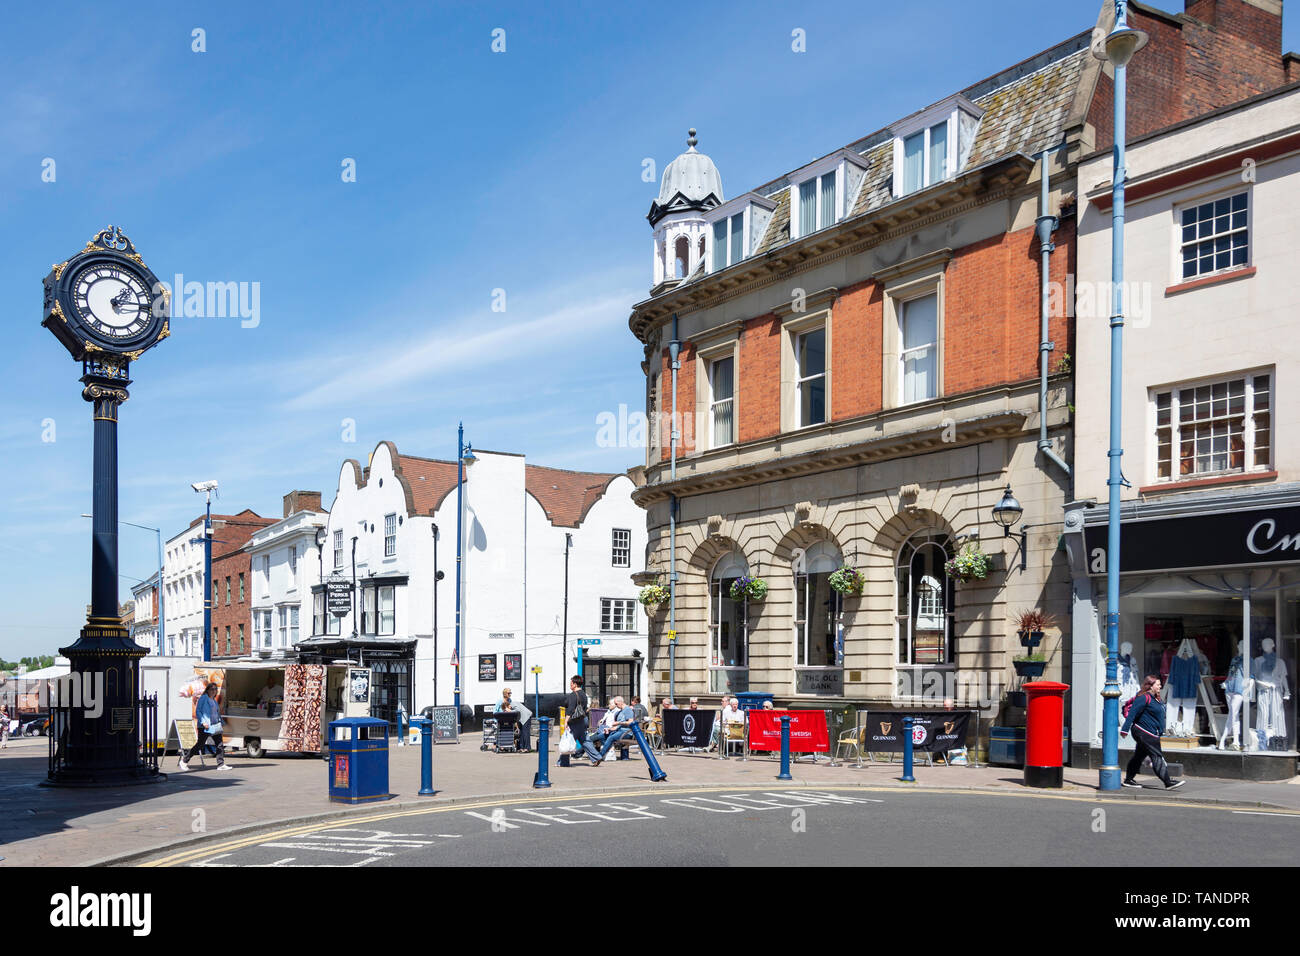 Stourbridge Clock Tower, Lower High Street, Stourbridge, West Midlands, England, United Kingdom Stock Photo